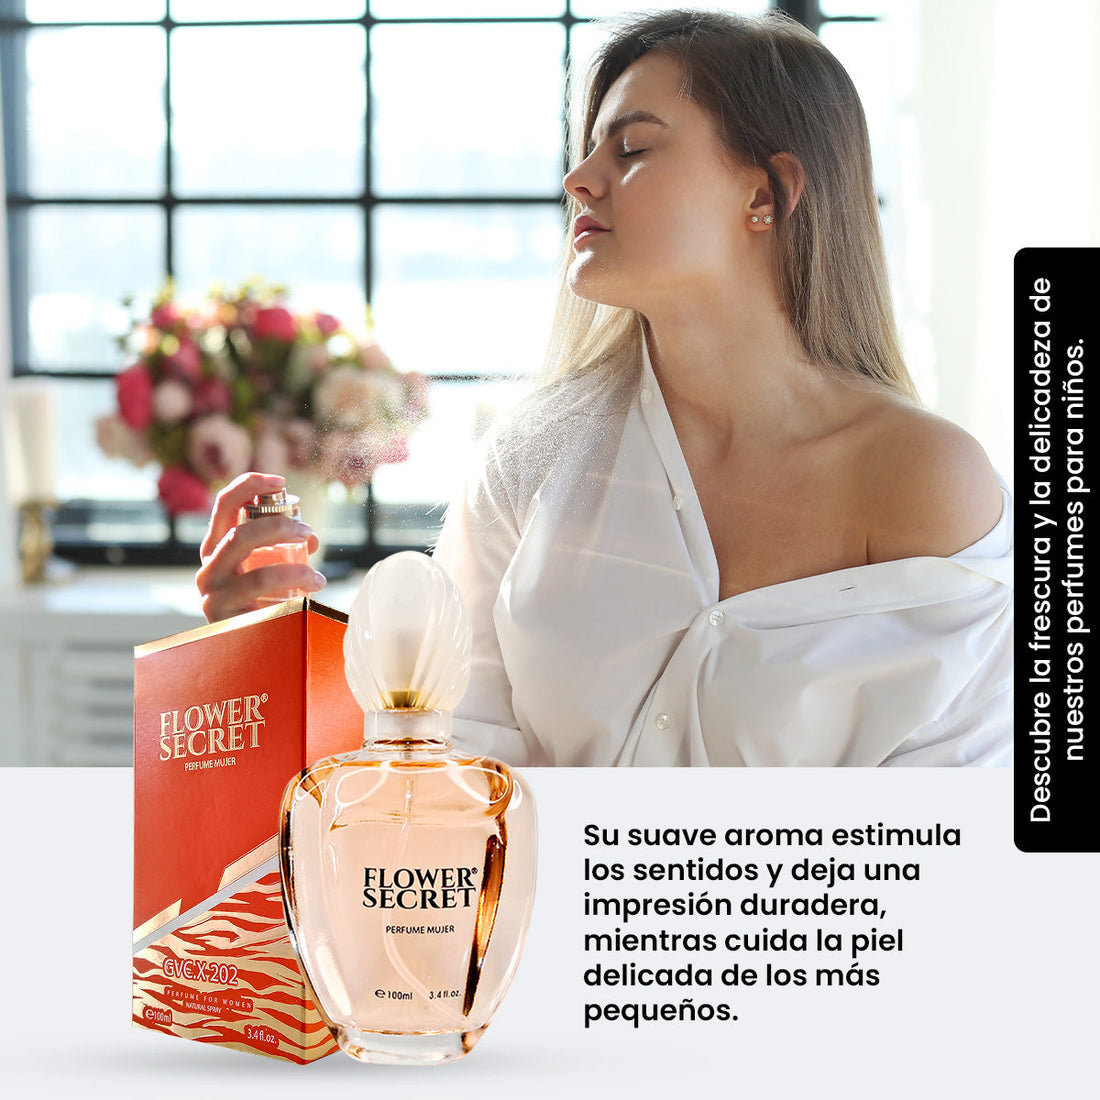 Perfume For Women Gvc.X 202 100Ml - Flower Secret